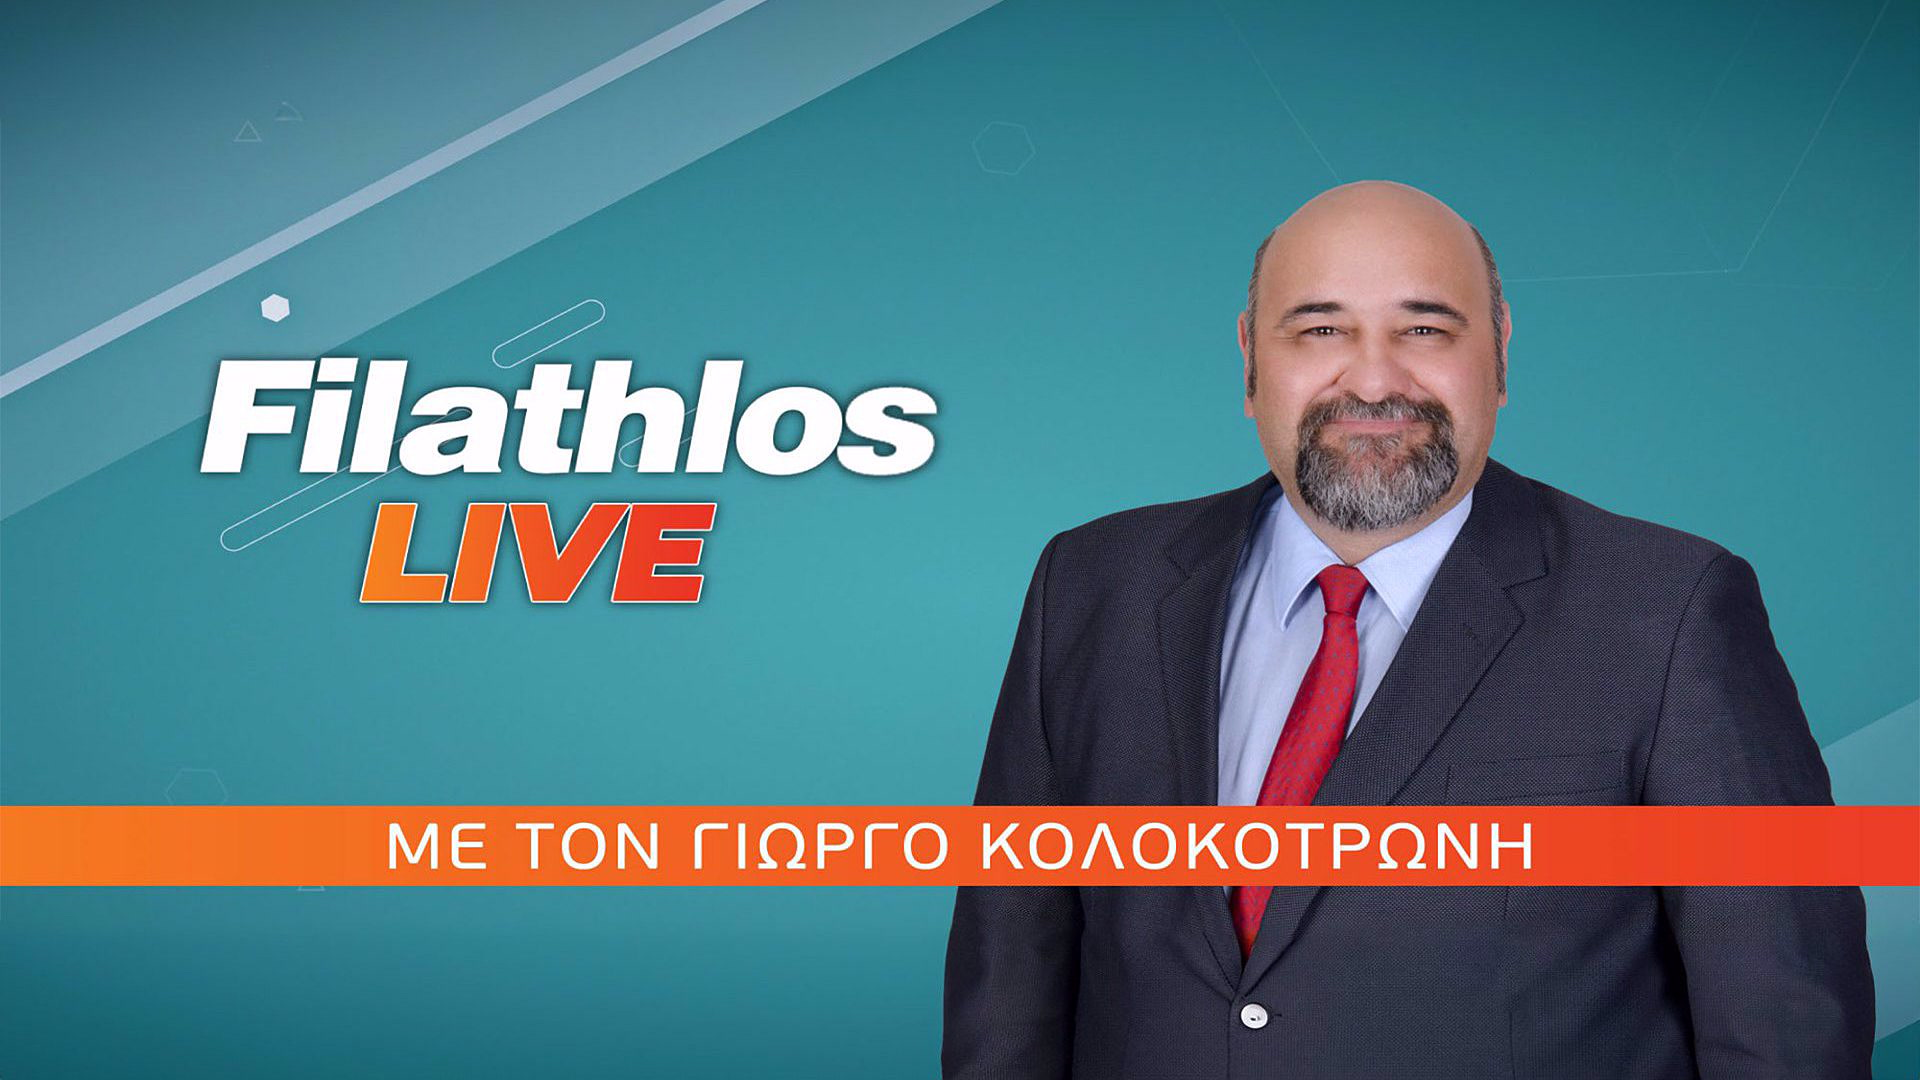 Filathlos Live